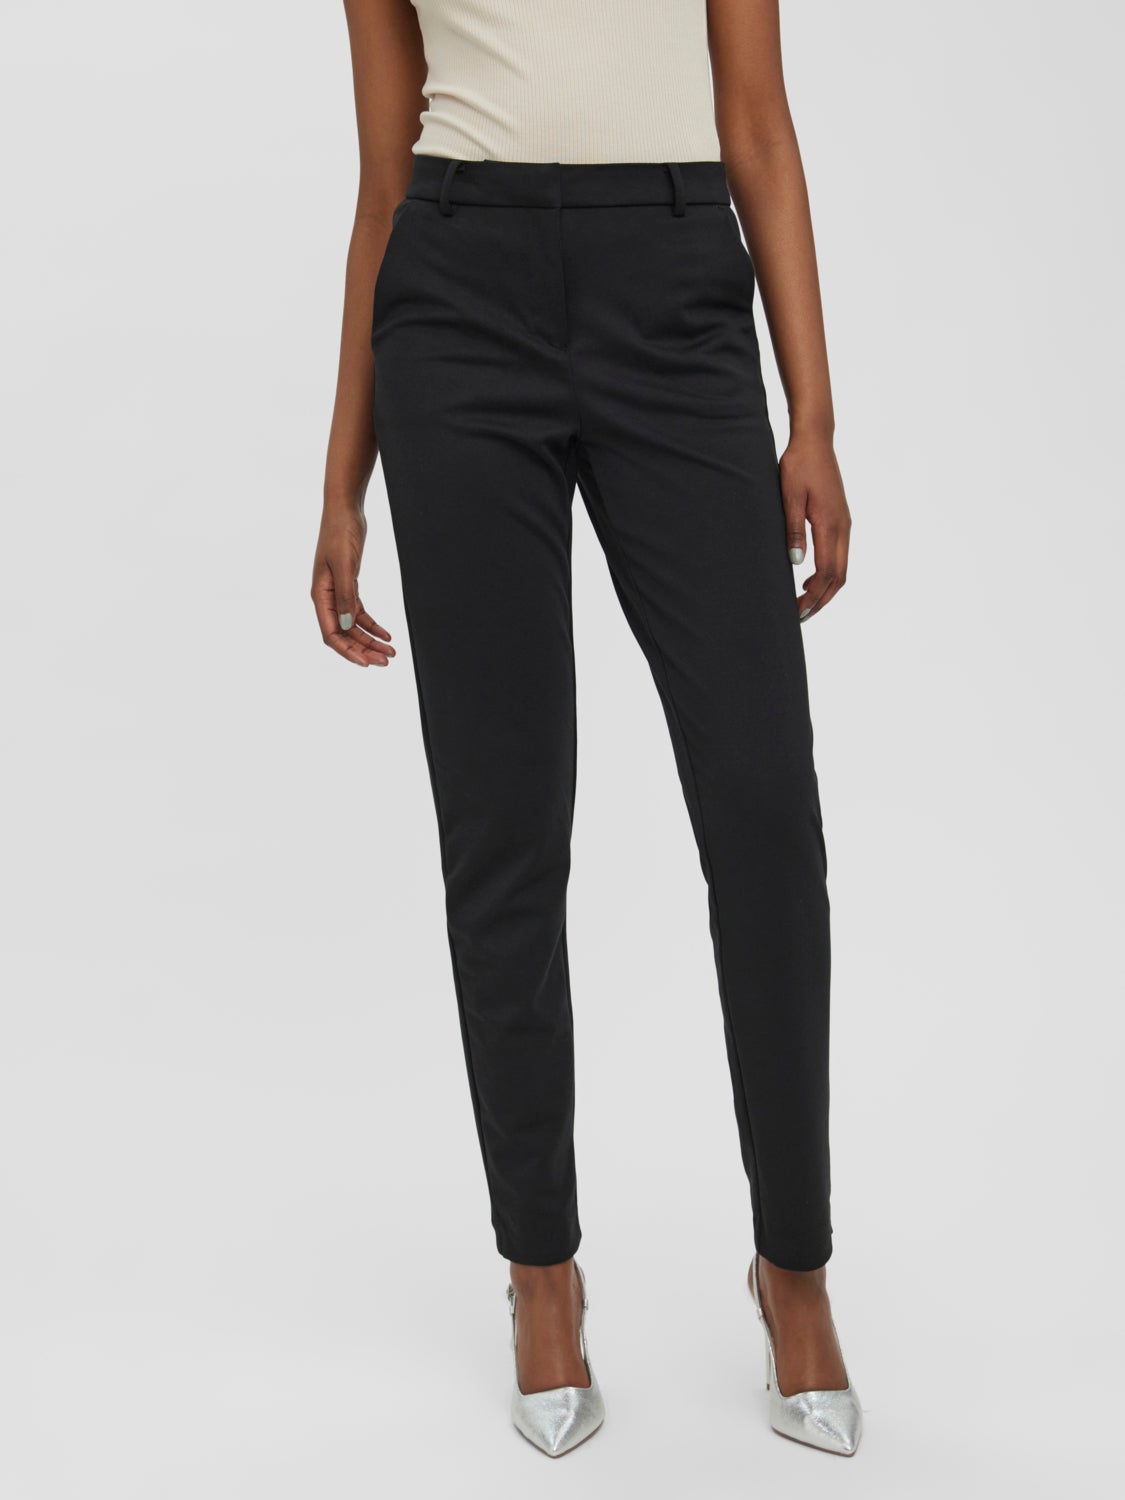 Moda Spodnie Spodnie z zakładkami Vero Moda Spodnie z zak\u0142adkami czarny W stylu biznesowym 